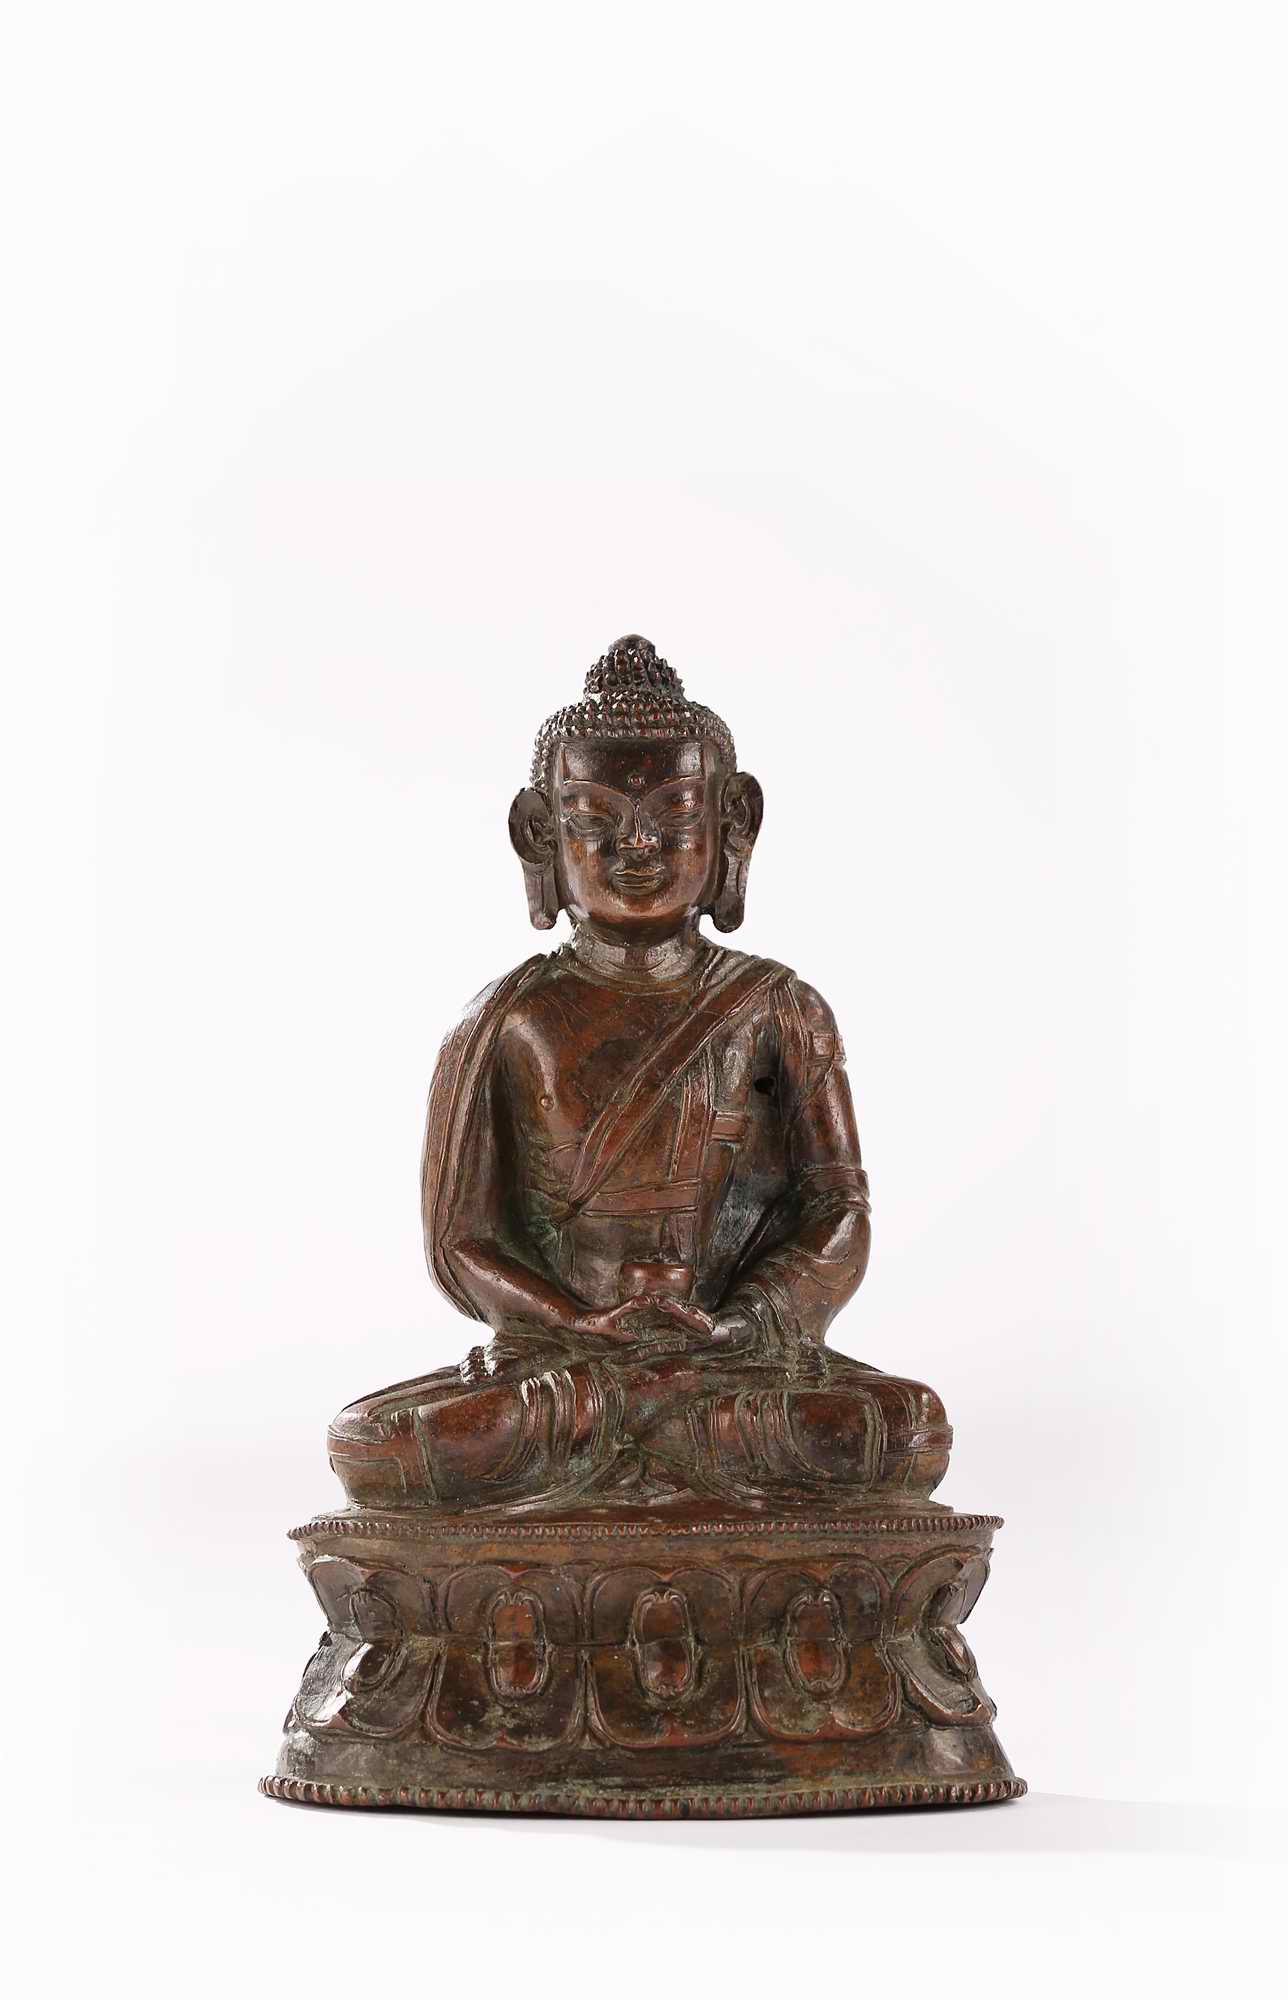 装裱形式：西藏 16世纪阿弥陀佛